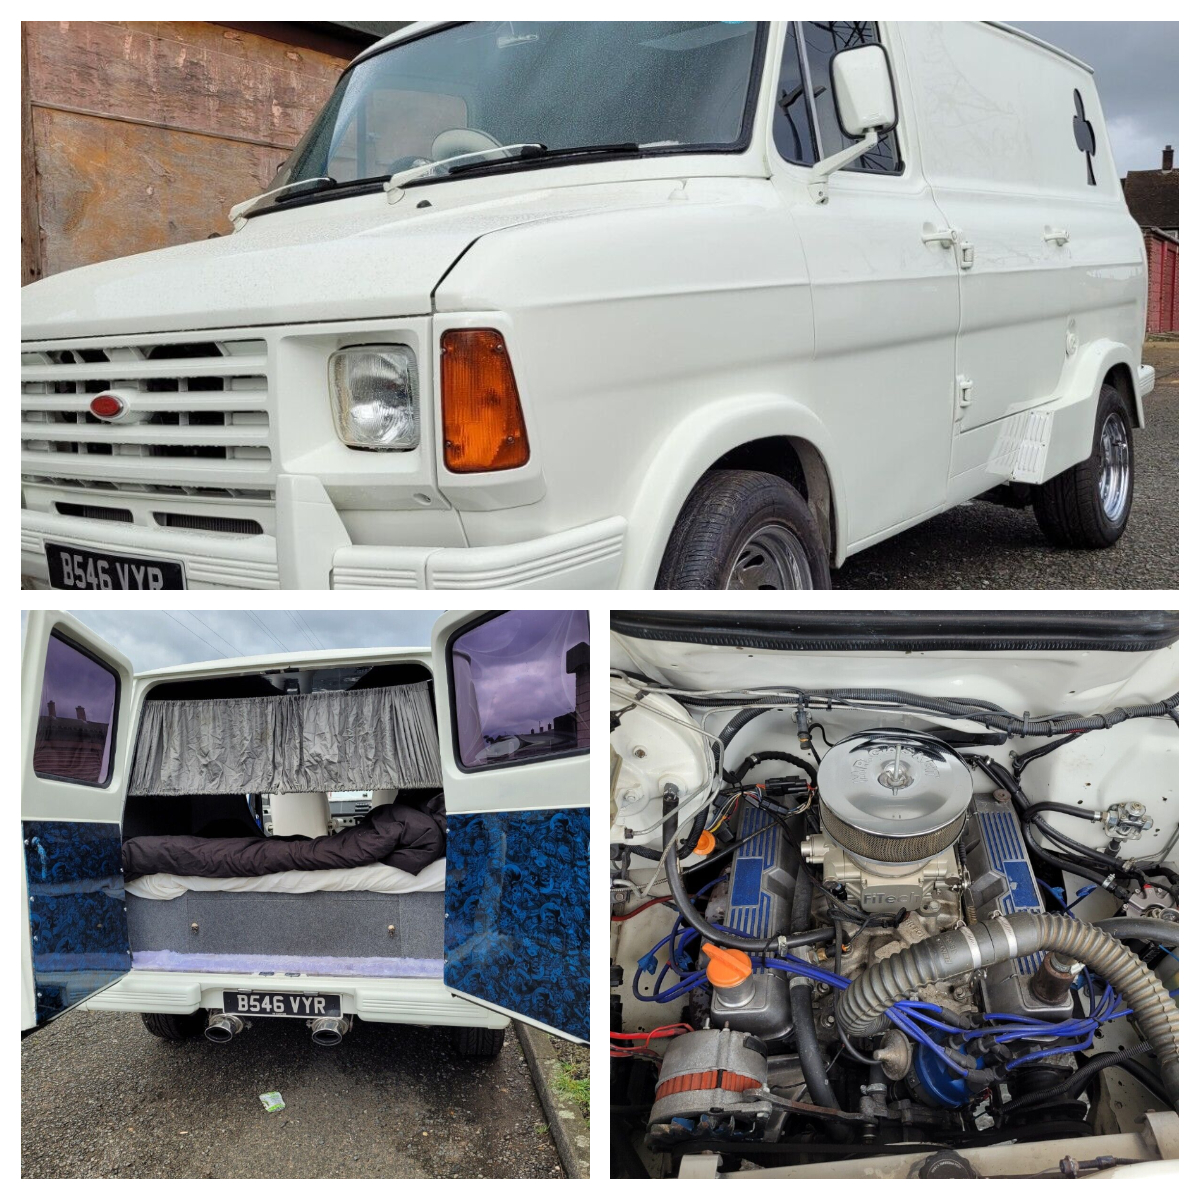 V8 Mk2 Ford Transit Van 😎
More info --> ow.ly/rG4050PO9JB

 #V8Transit #FordVan #ClassicCars #VanLife #FordTransit #V8Power #RetroRides #VanLovers